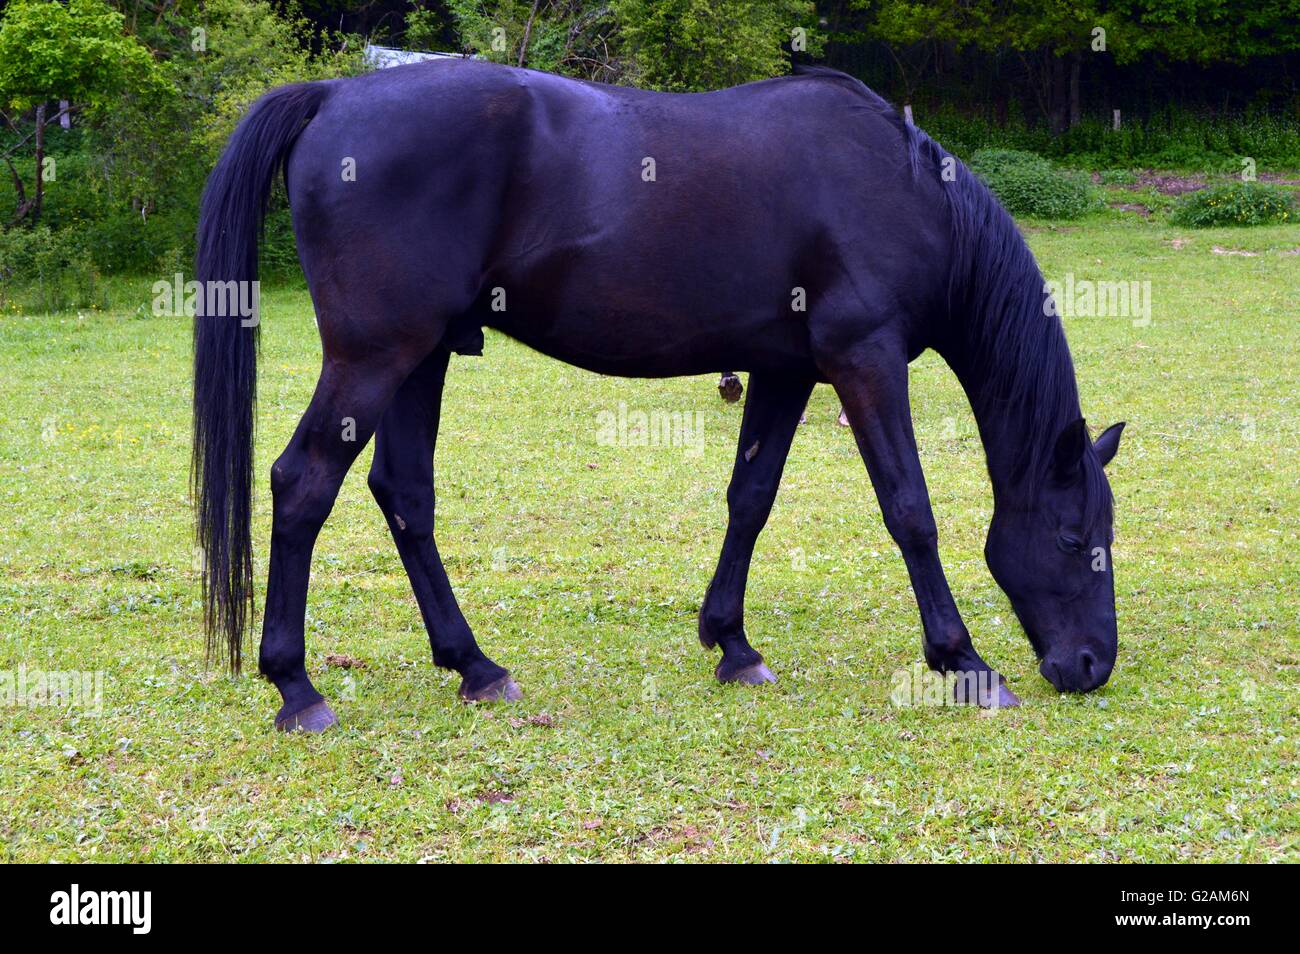 El caballo de color negro en un pequeño y verde pradera. Foto de stock